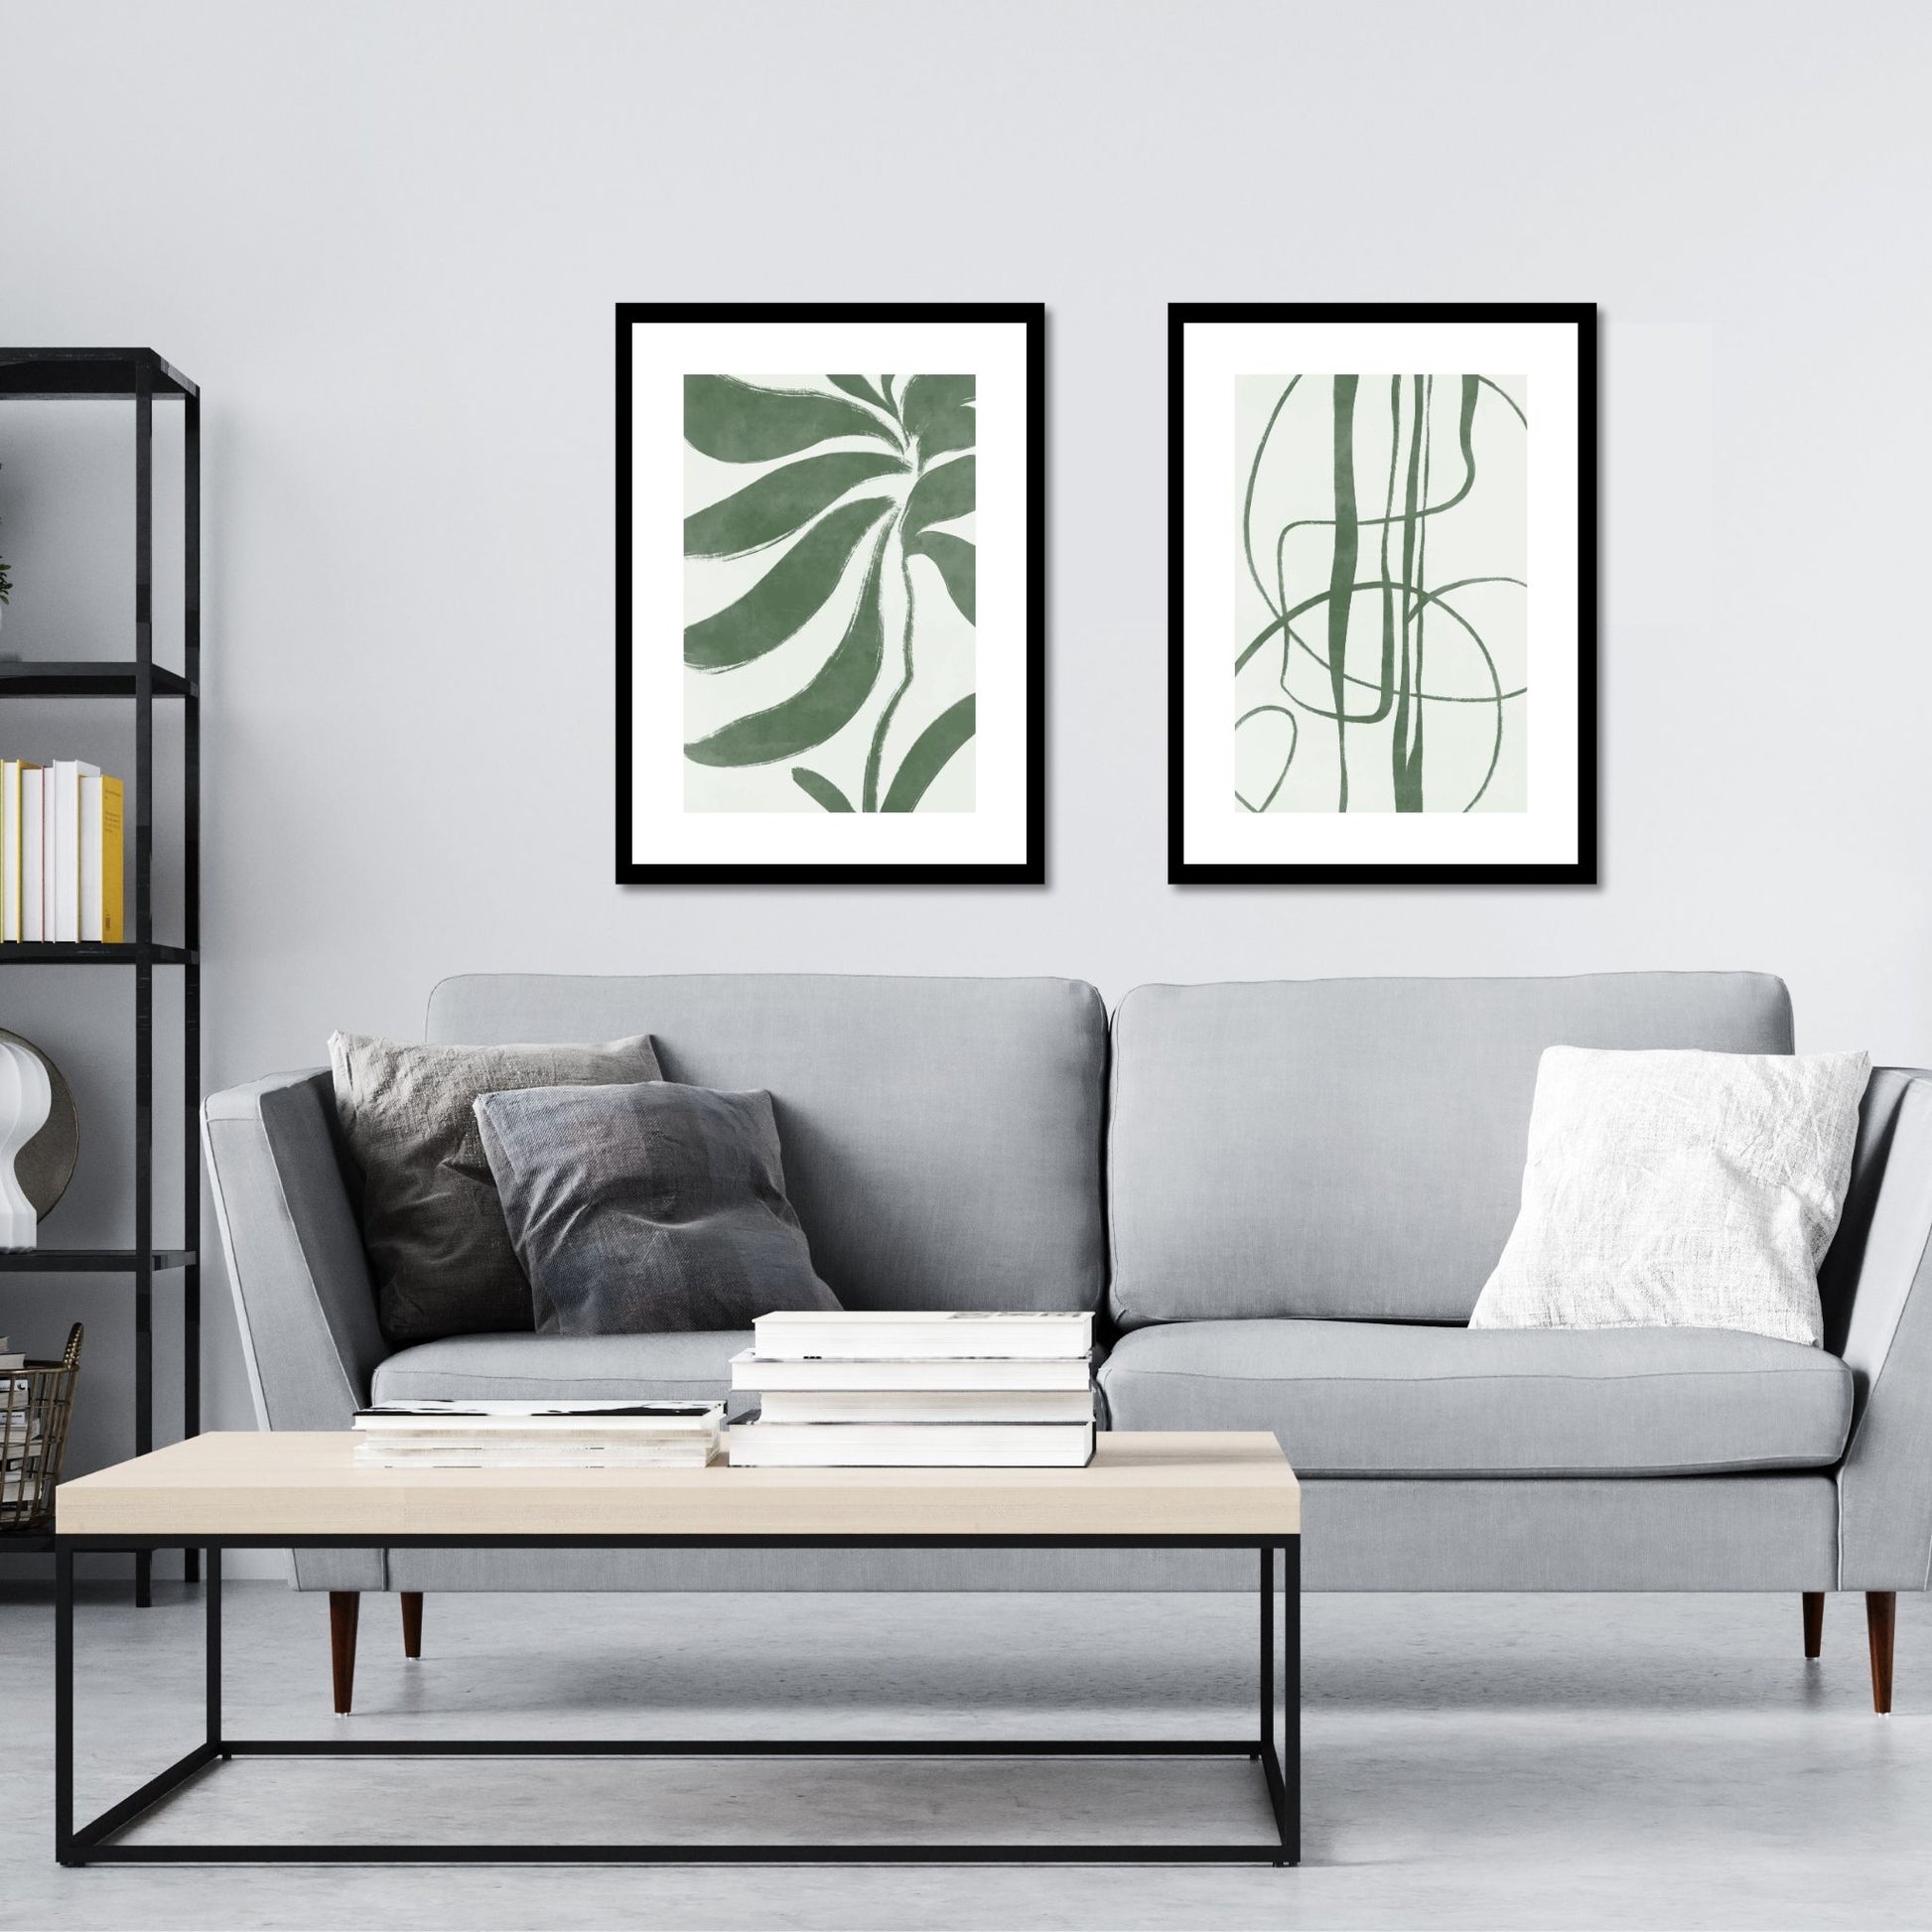 Green Abstract plakat. Med sine beroligende grønne toner og sofistikerte design, tilfører denne plakaten en følelse av ro og harmoni til ethvert rom. Illustrasjonen viser plakat No21 og No22 i sort ramme på en vegg over en sofa.